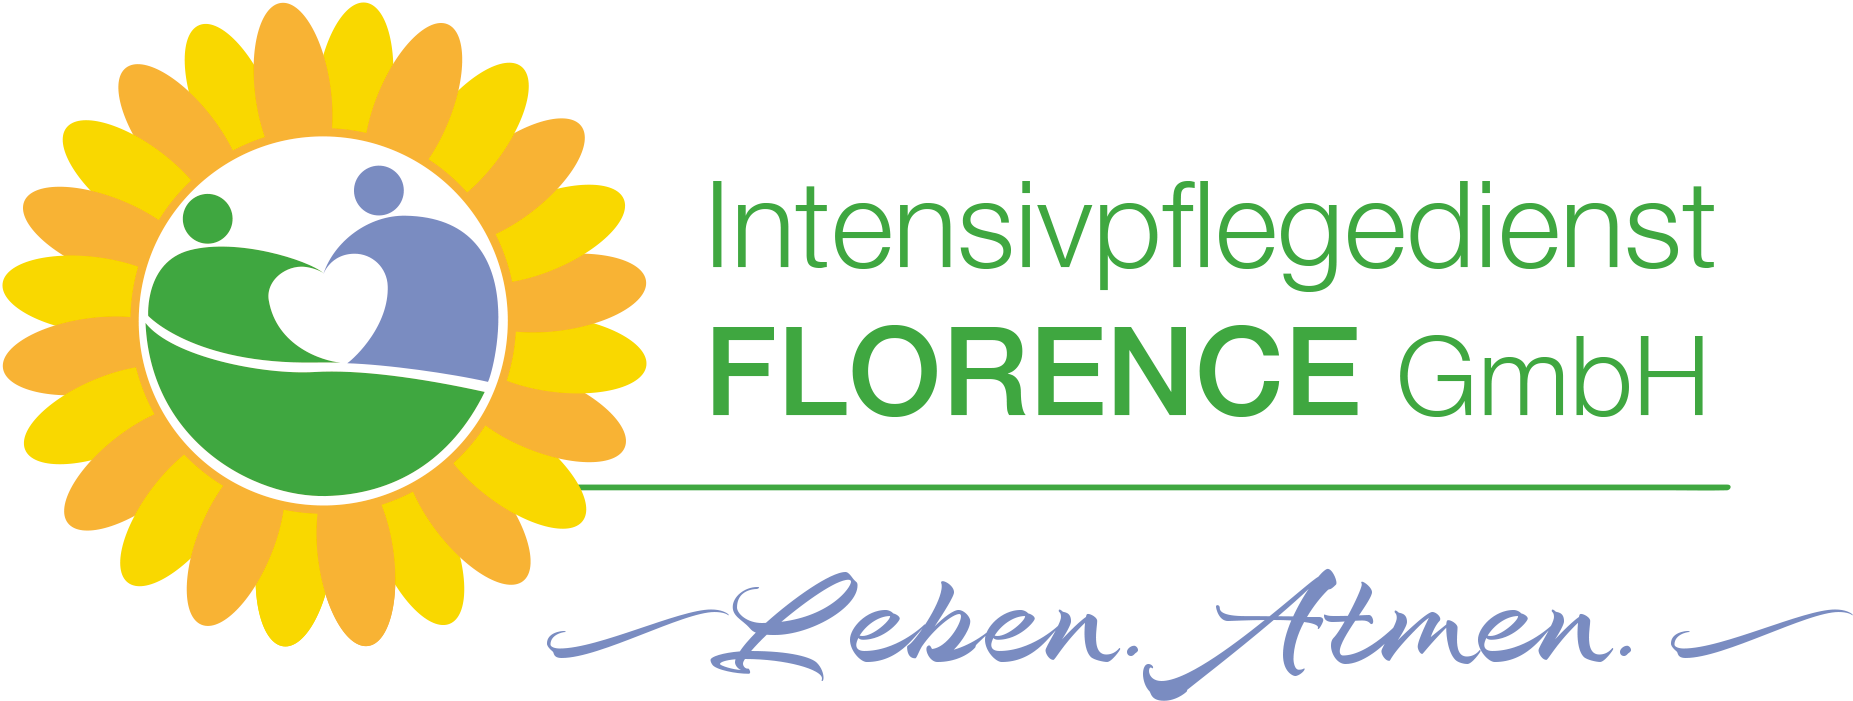 Intensivpflegedienst Florence